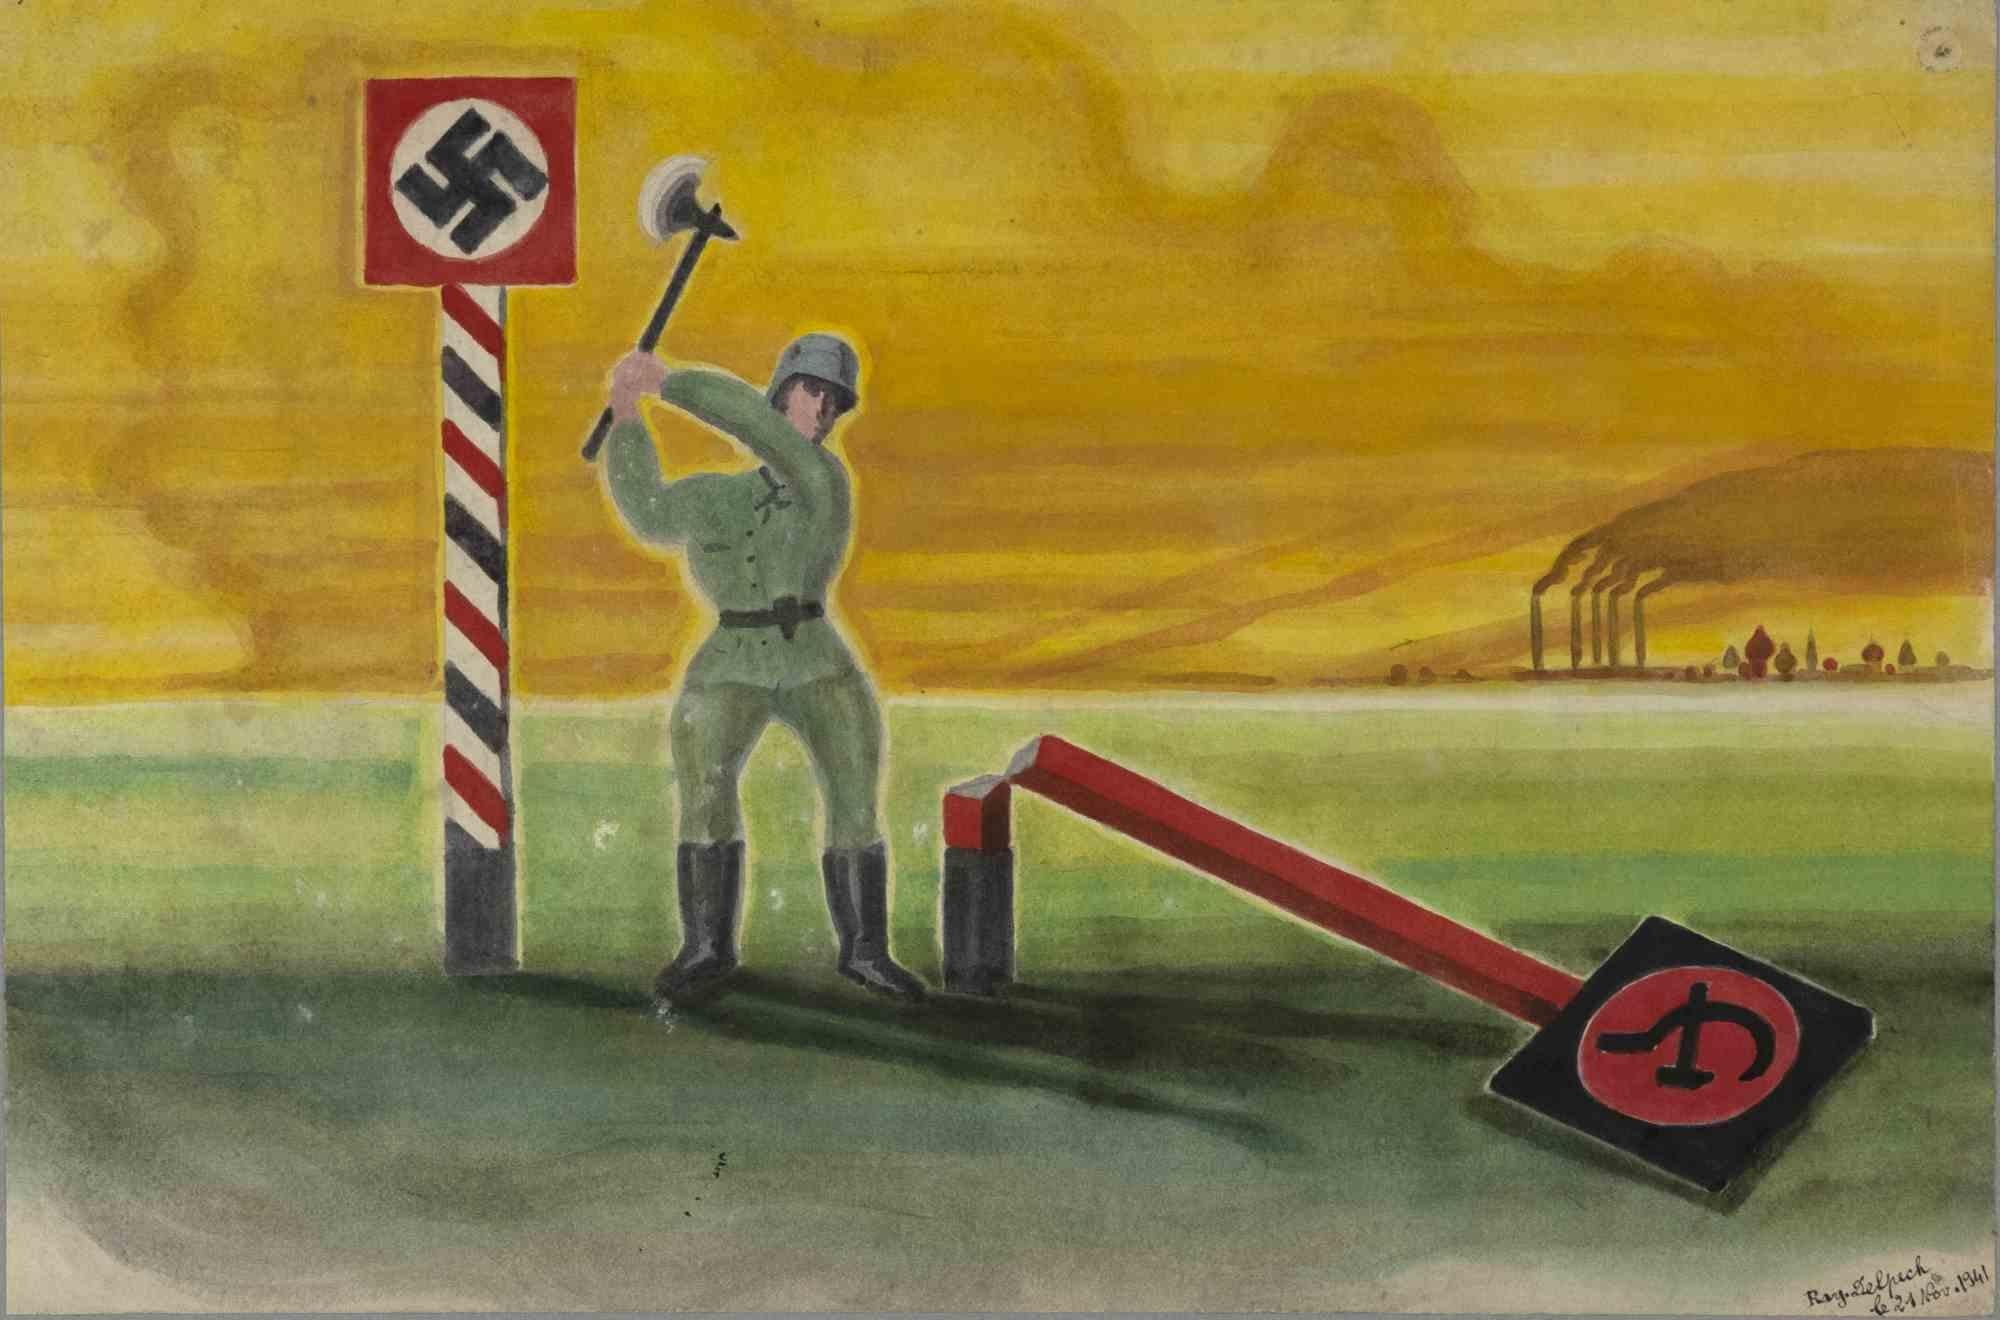 Pendant la guerre est un dessin original à l'aquarelle réalisé en 1941 par Jean-Raymond Delpech (1916-1988). 

Signé à la main et daté en bas à droite. L'état de conservation des œuvres d'art est bon.

Cadre inclus : 50 x 3,5 x 60 cm

Jean-Raymond